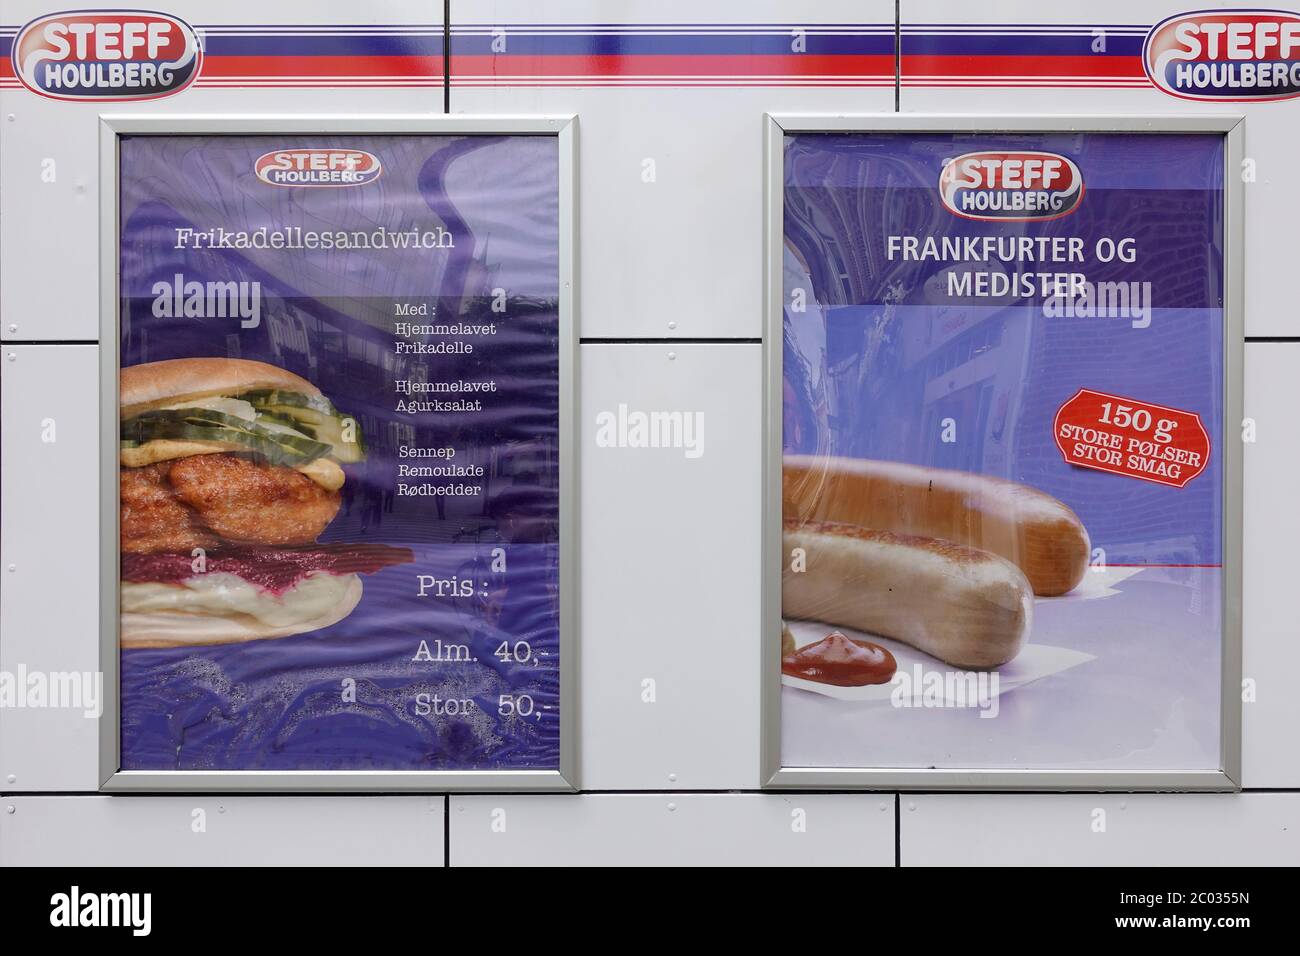 Poster Werbung Steff Houlberg Fast Food Deli Sandwiches Und Frankfurter Würstchen In Aarhus Dänemark Stockfoto